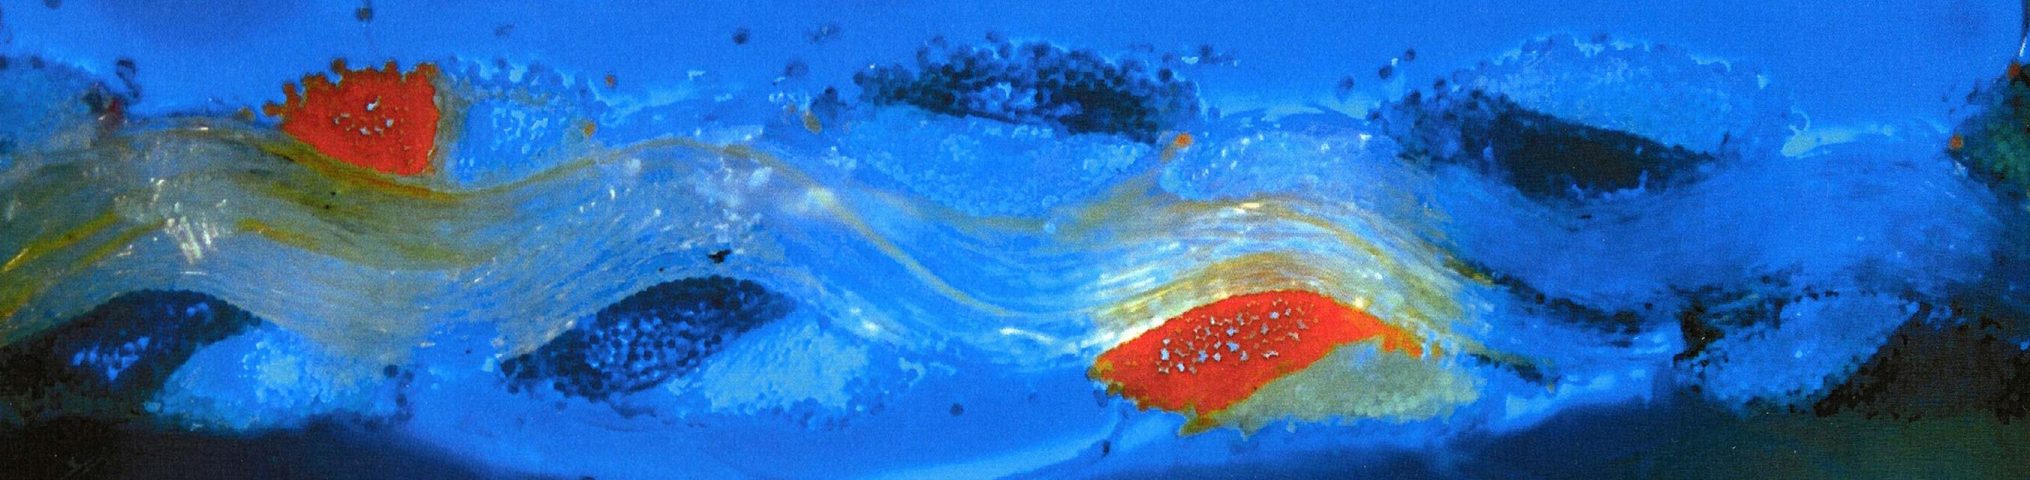 Wellenförmige Struktur auf blauem Grund mit roten Bildpartien.